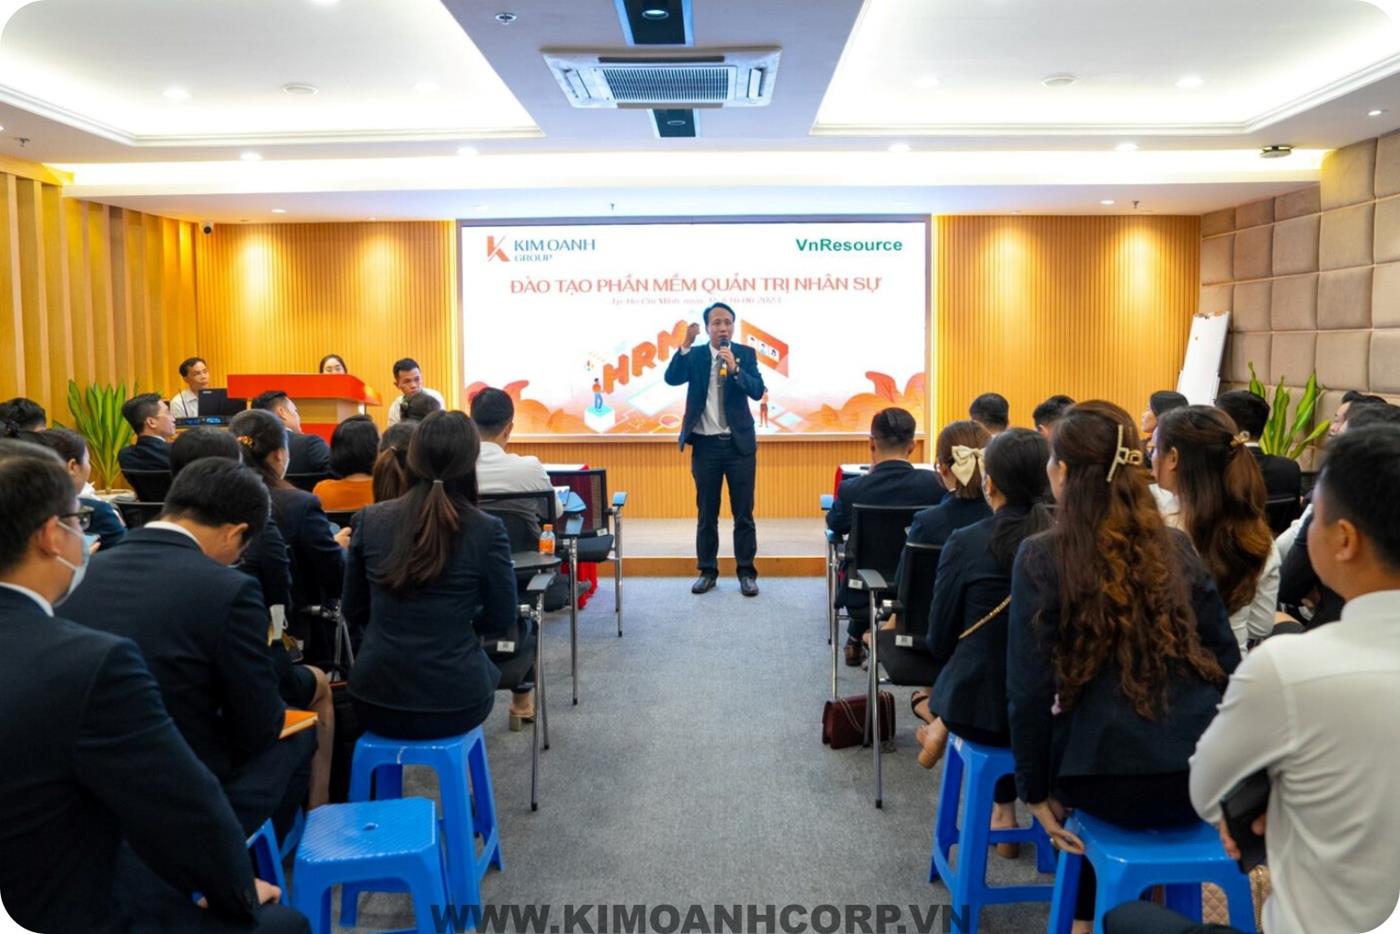 Các khóa đào tạo được tổ chức thường xuyên tại Kim Oanh Group giúp nhân viên nâng cao kiến thức, kỹ năng chuyên môn